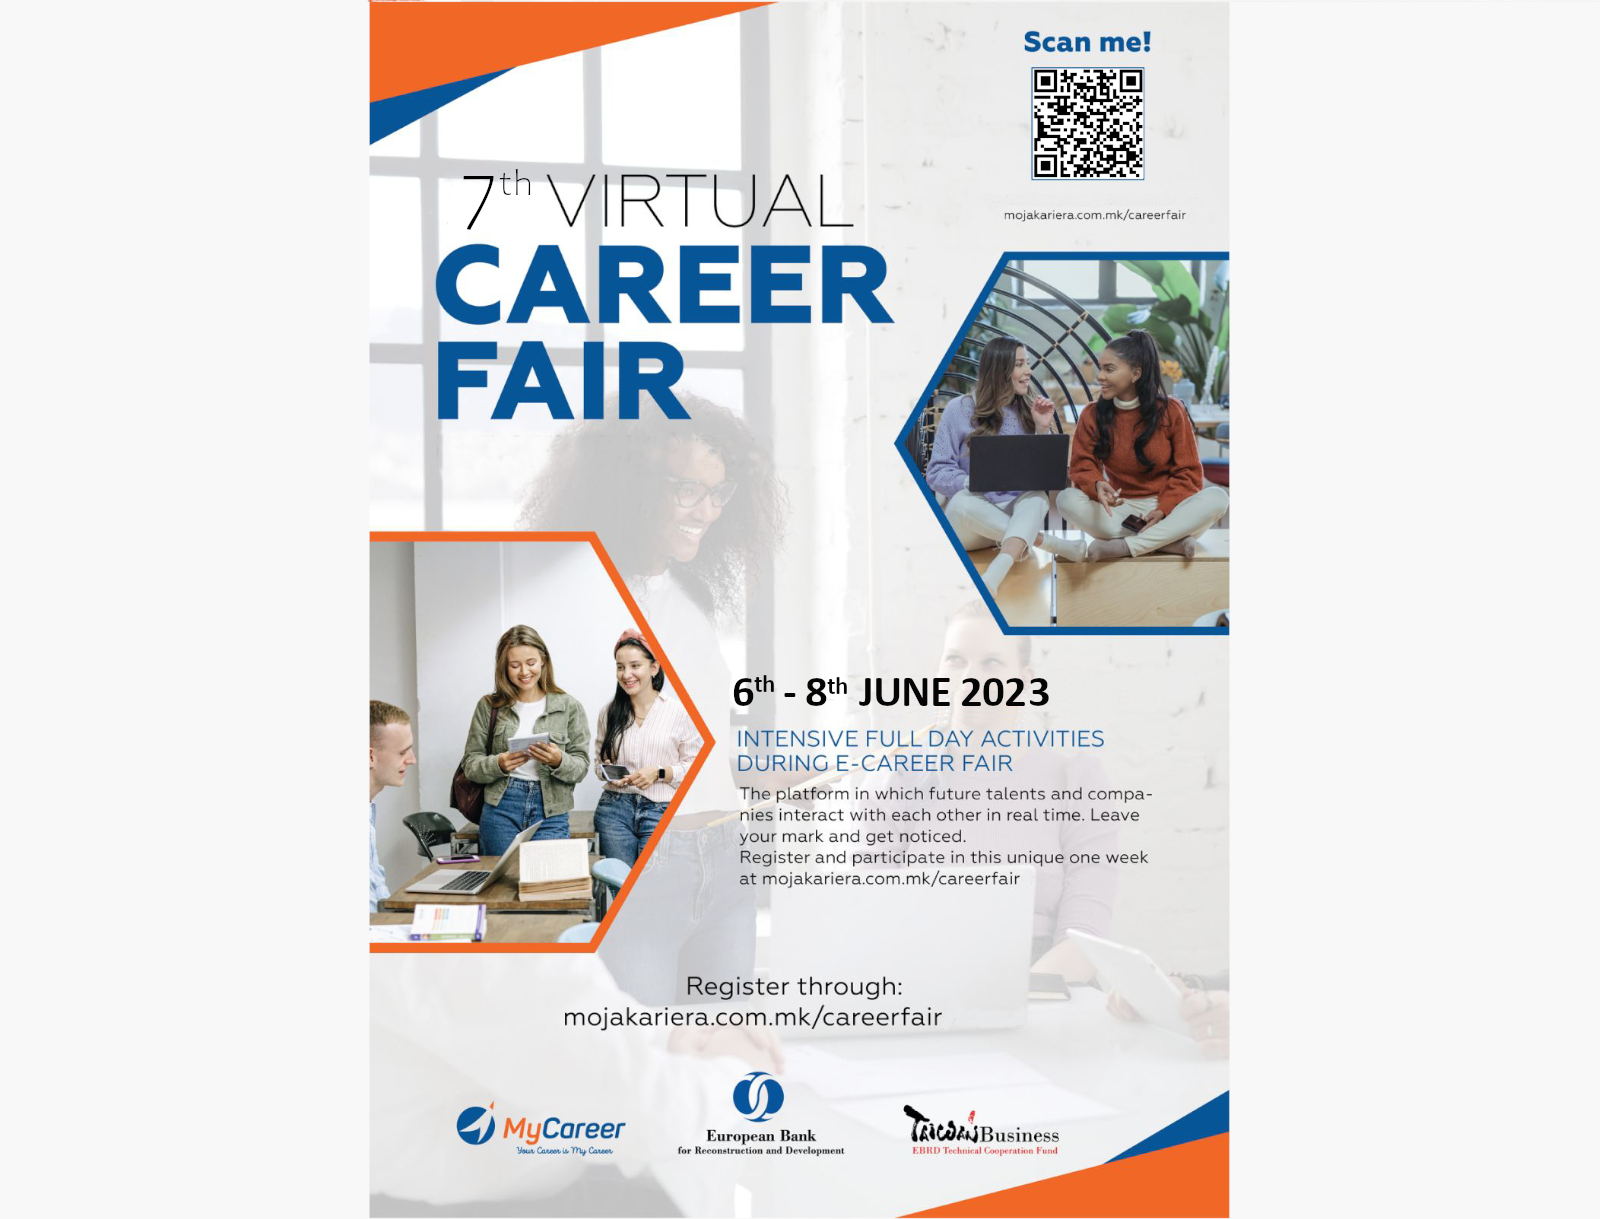 The 7th virtual career fair, 6th - 8th June 2023